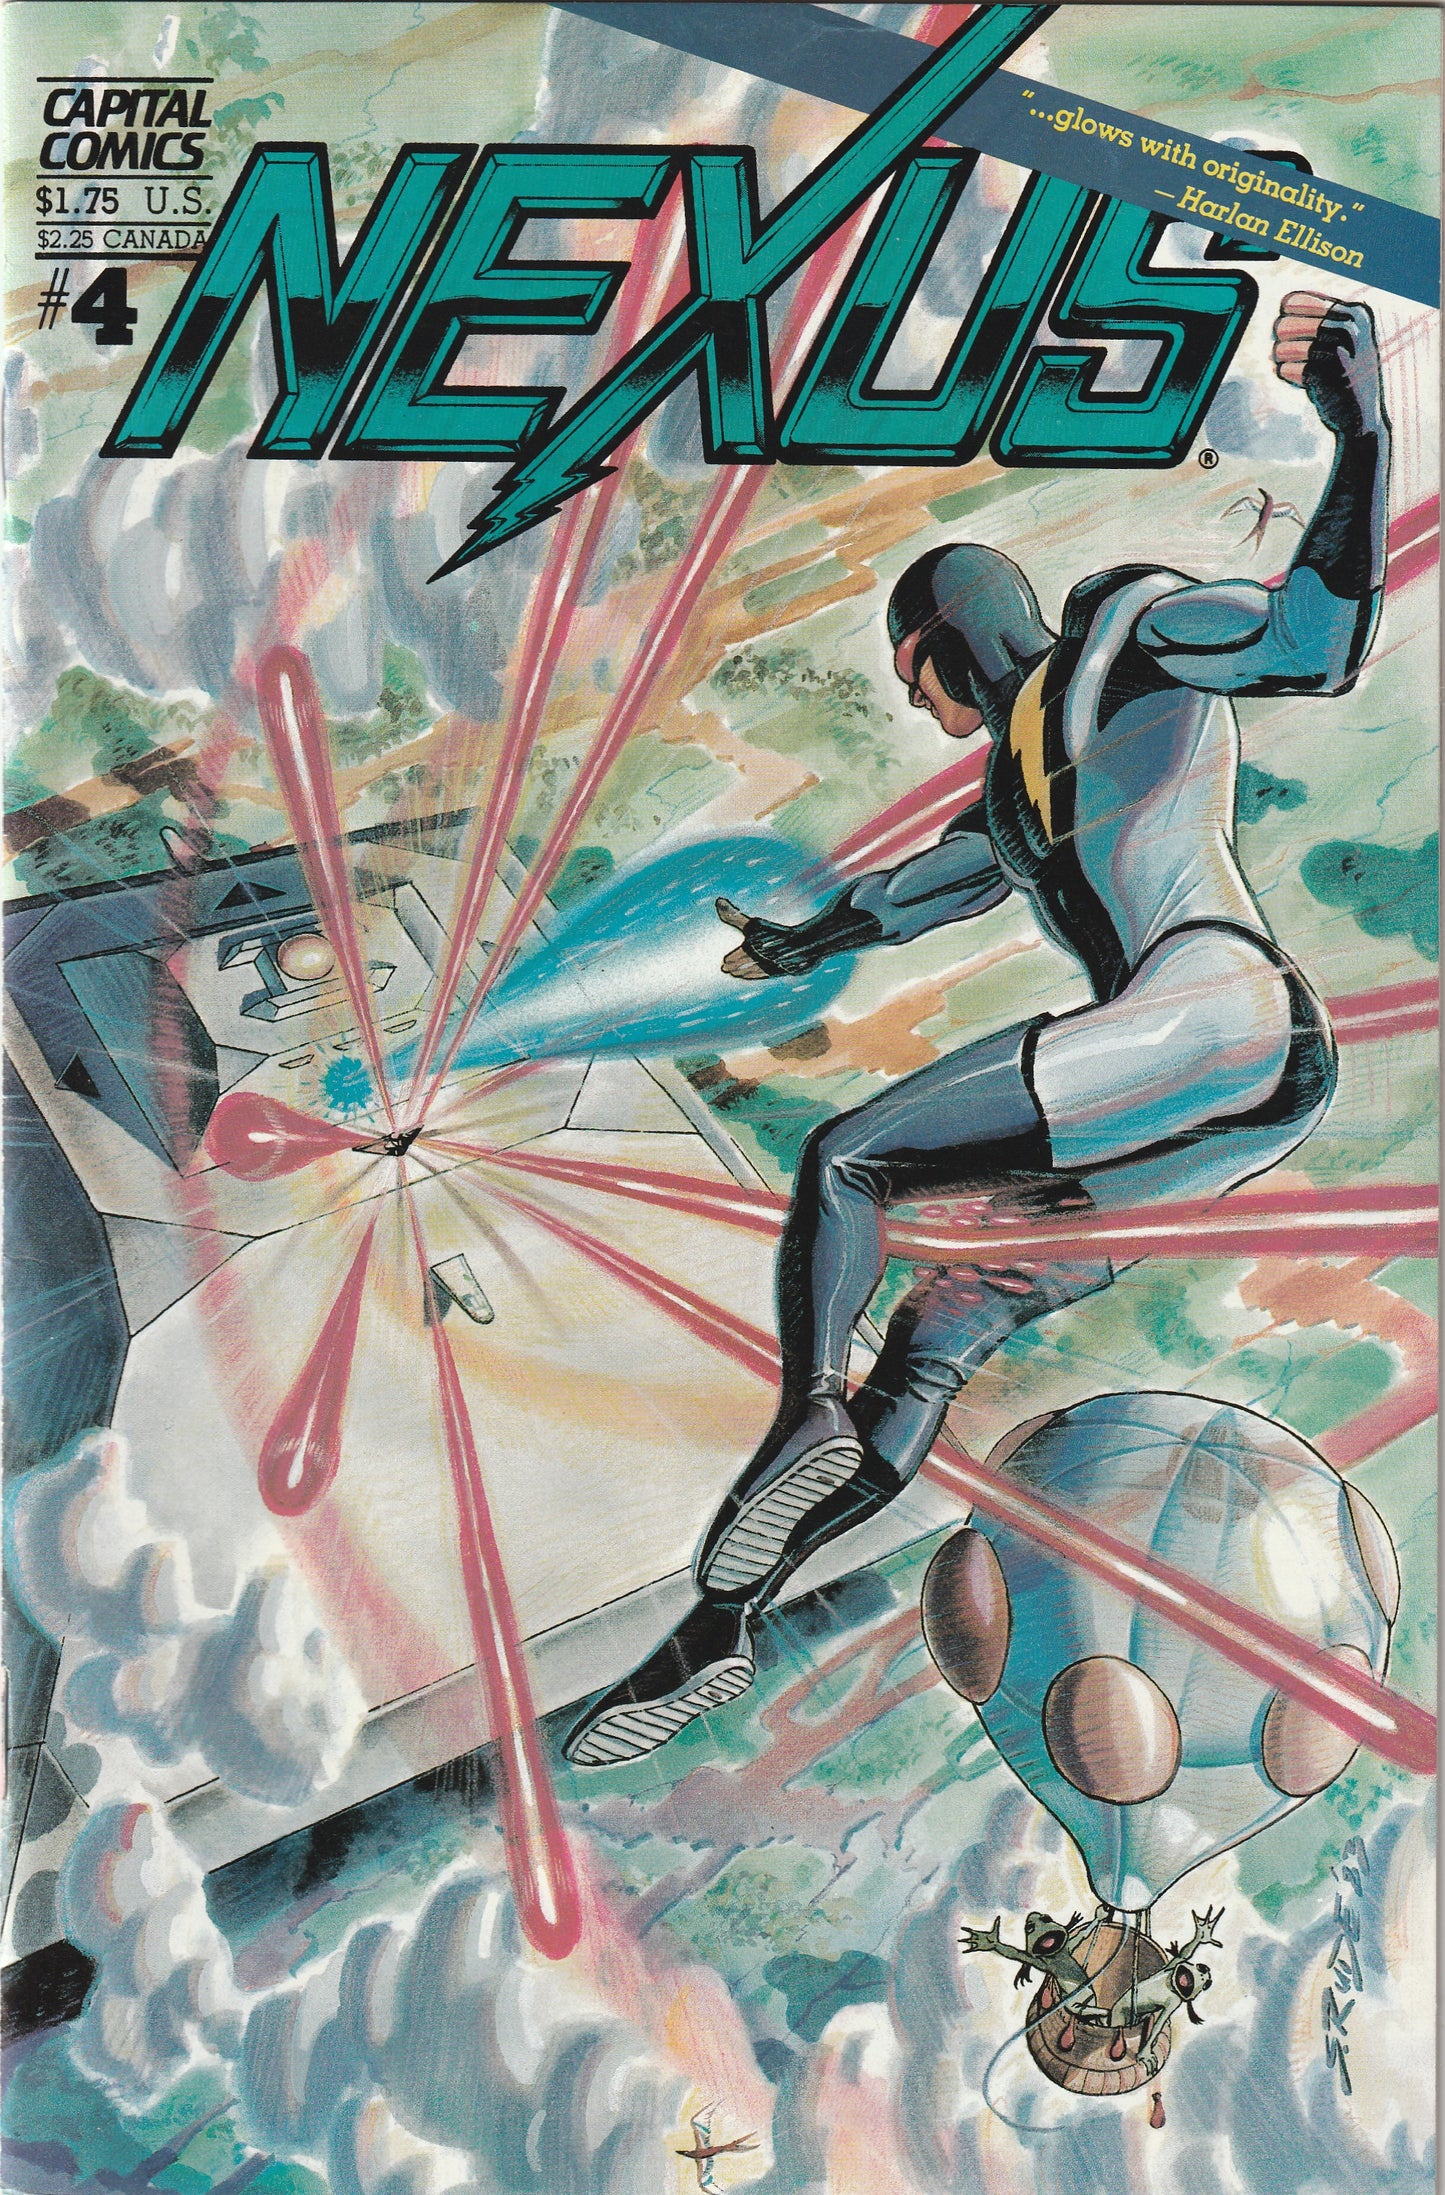 NEXUS #4 (Vol 2, 1983) - In Colour!